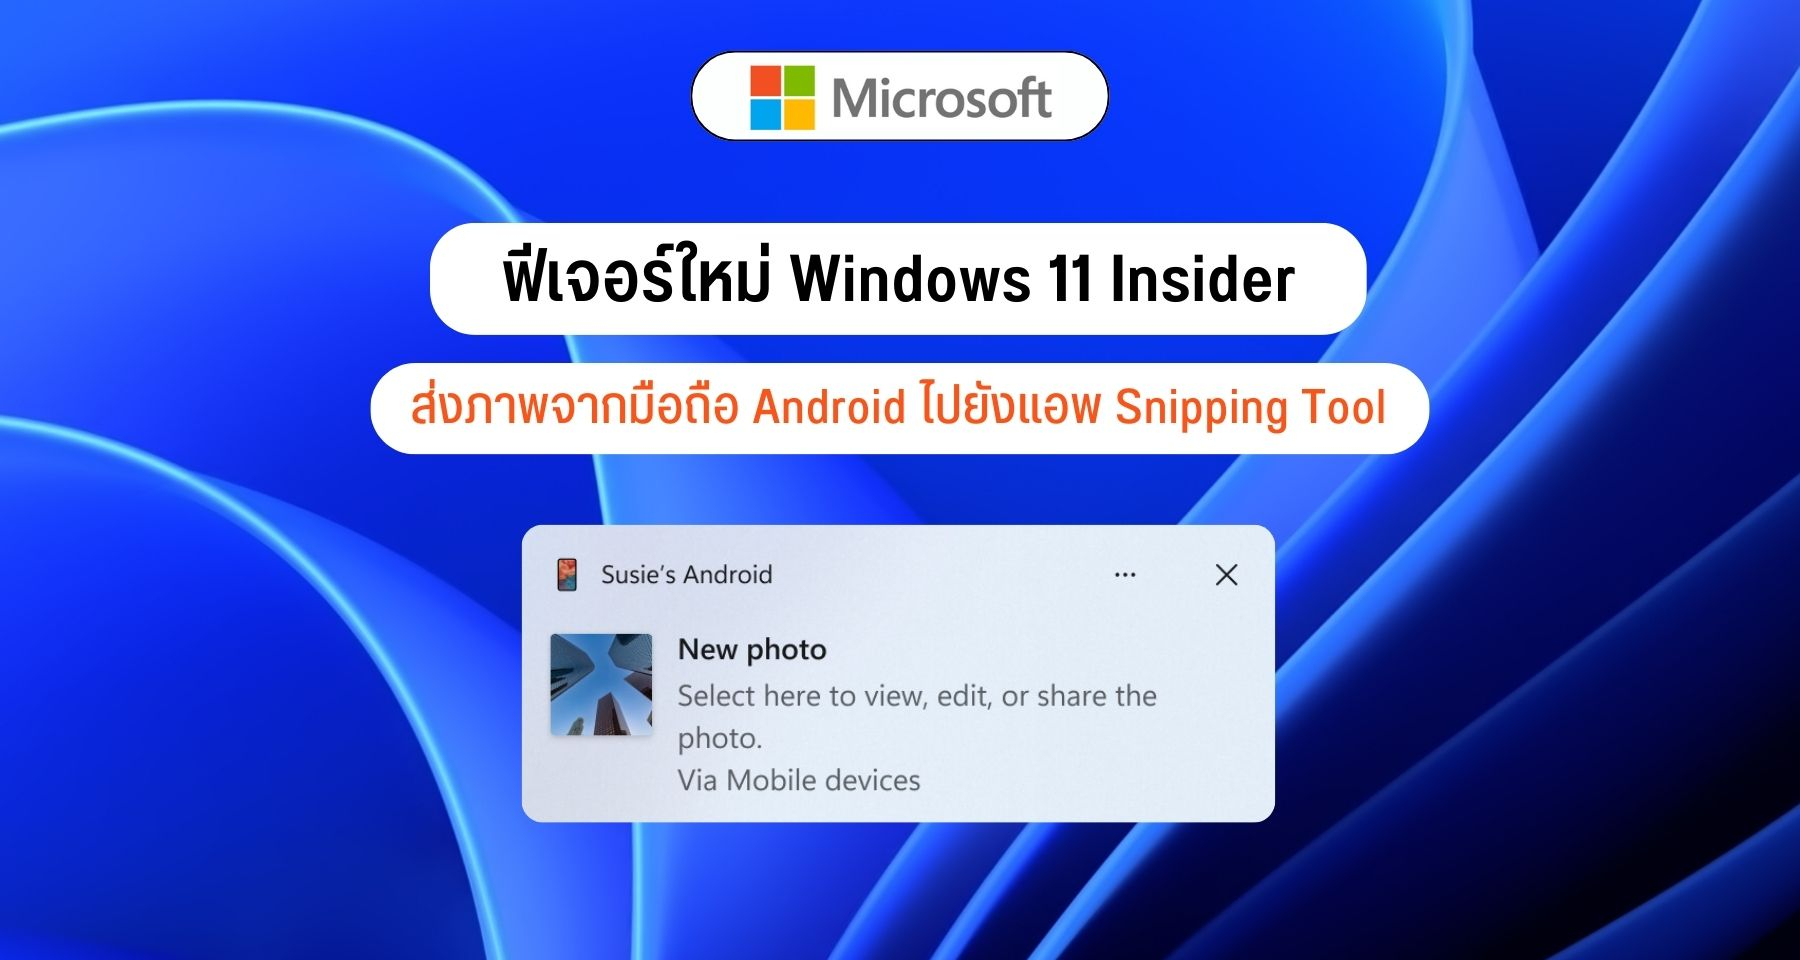 ฟีเจอร์ใหม่ Windows 11 Insider ส่งภาพจากมือถือ Android ไปยังแอพ Snipping Tool